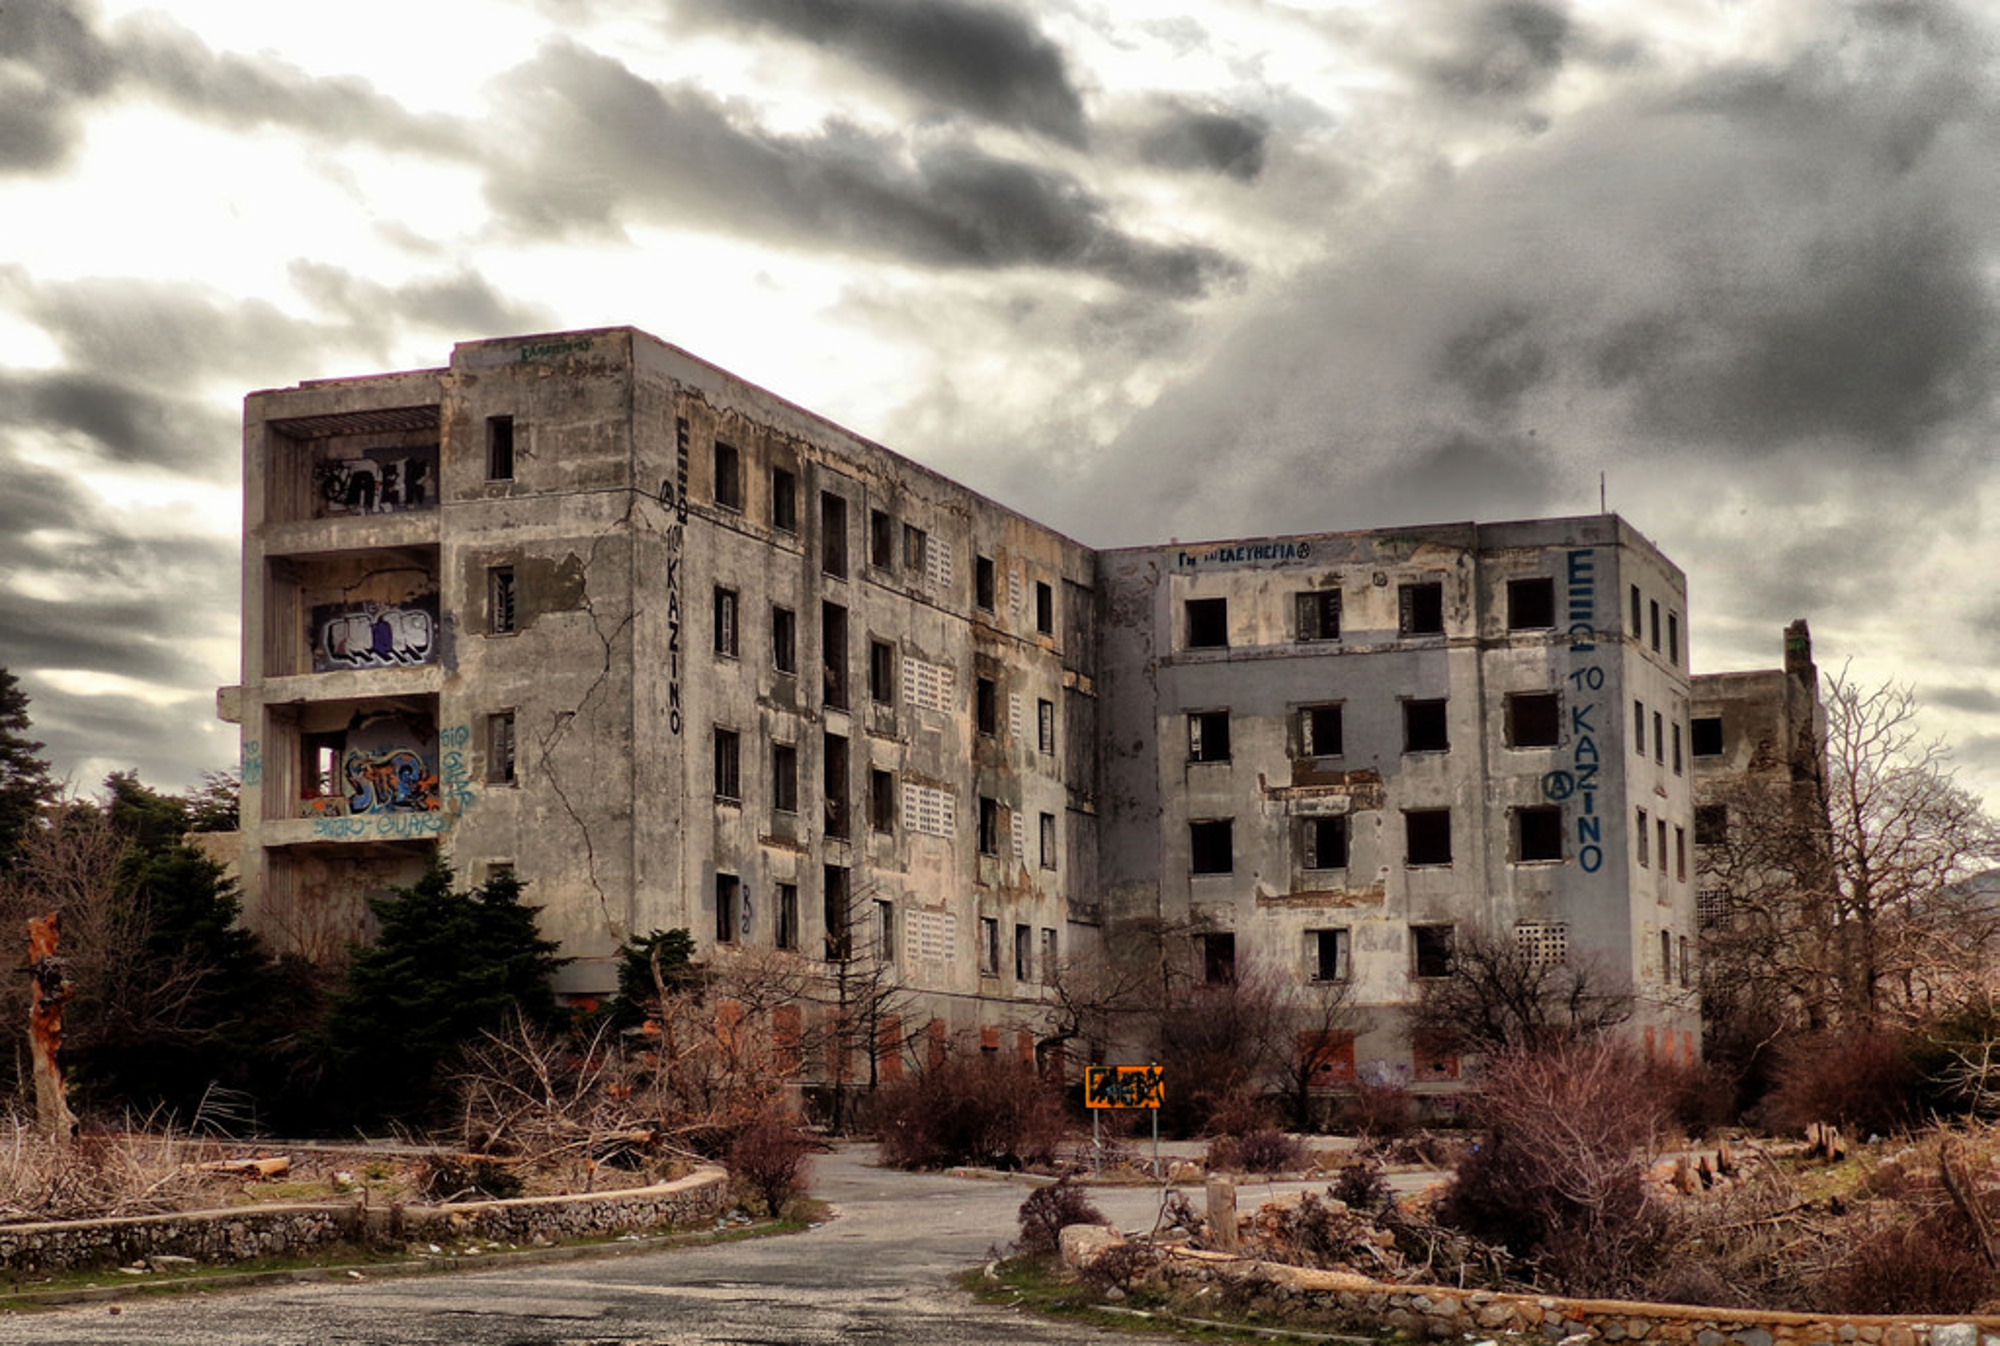 Προκαλούν τρόμο: Αυτά είναι τα στοιχειωμένα σπίτια της Αττικής – Η ιστορία που «κρύβουν»